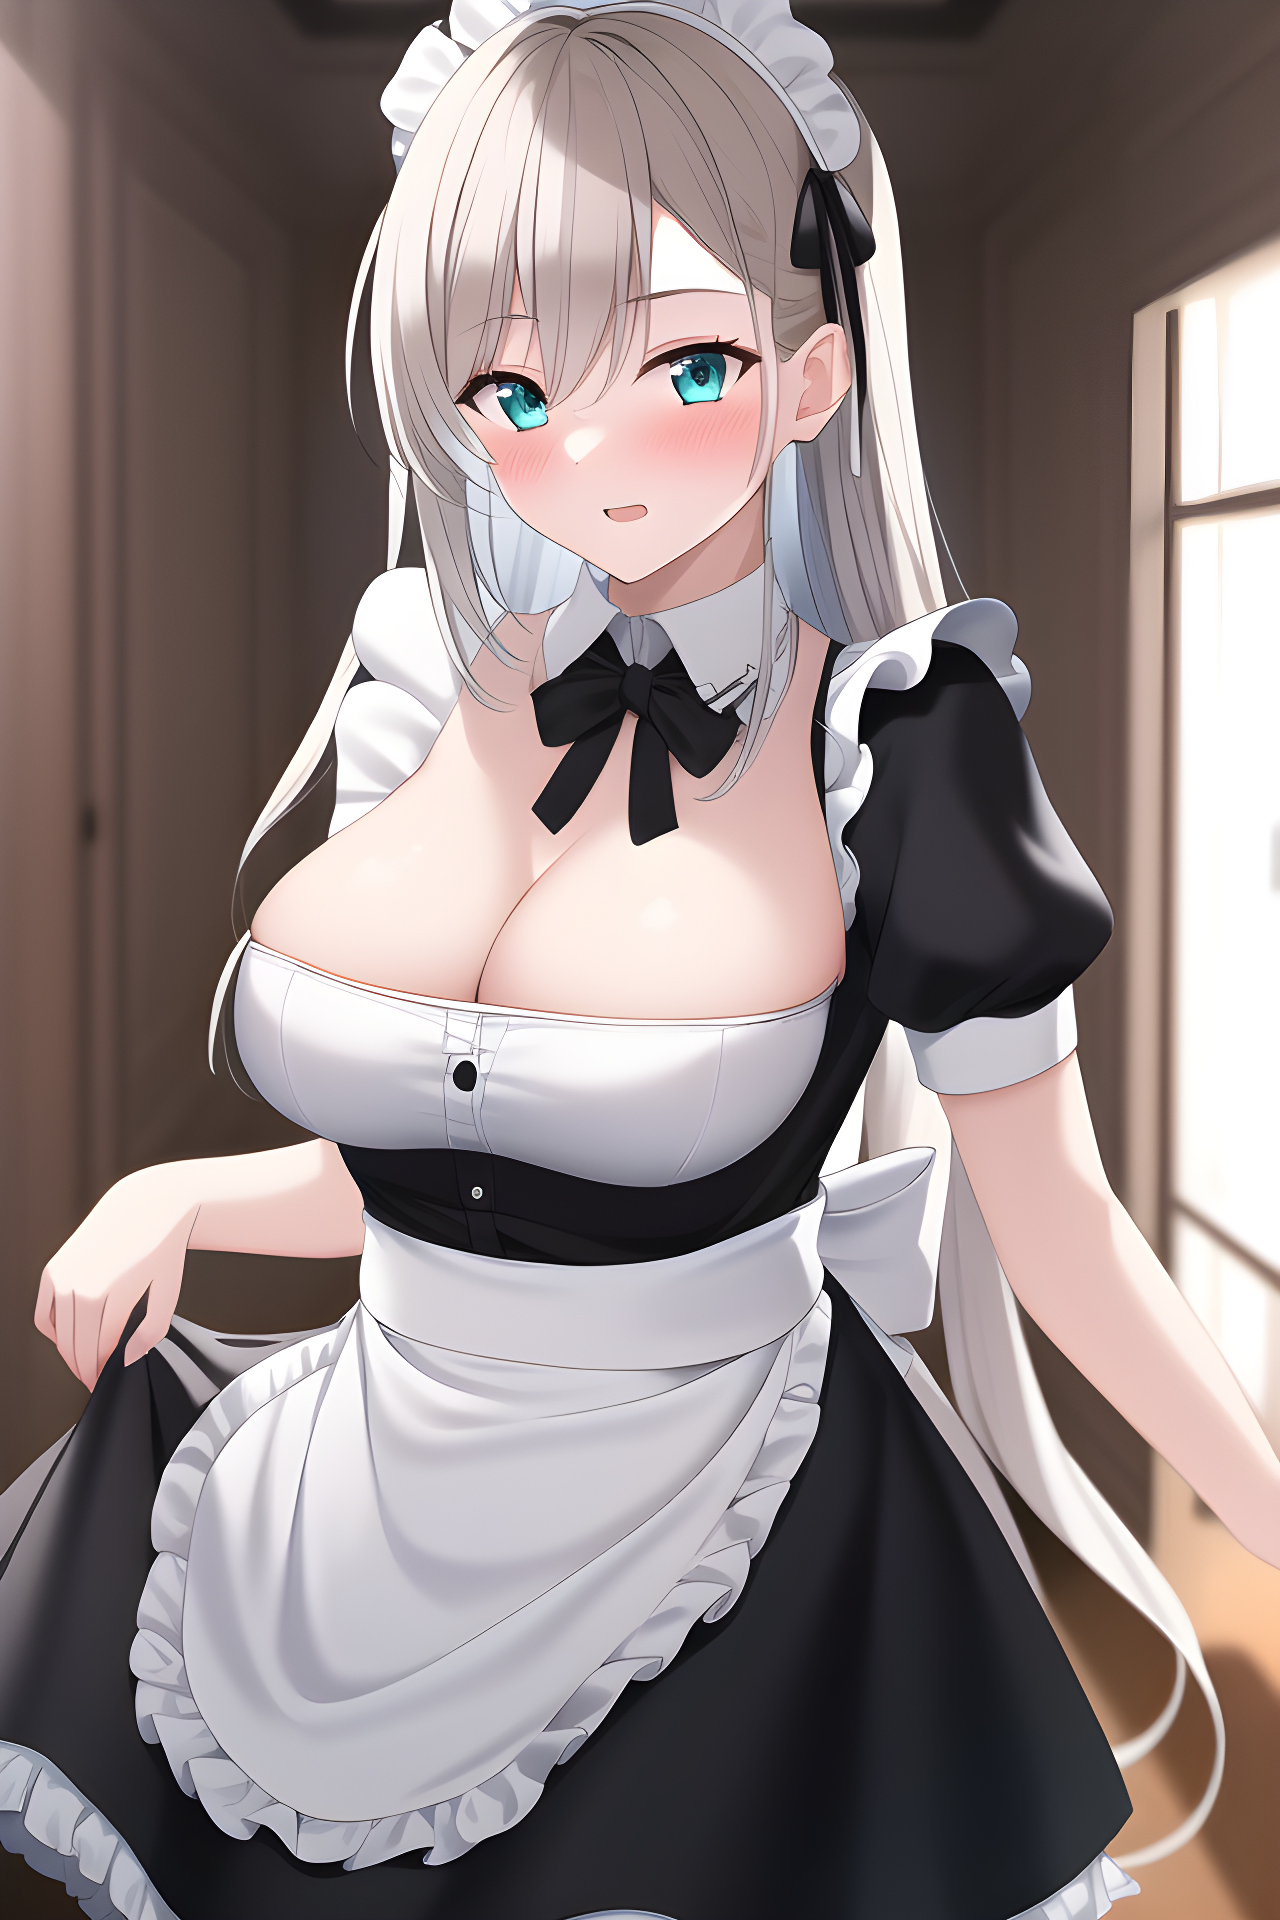 Anime maid boobs